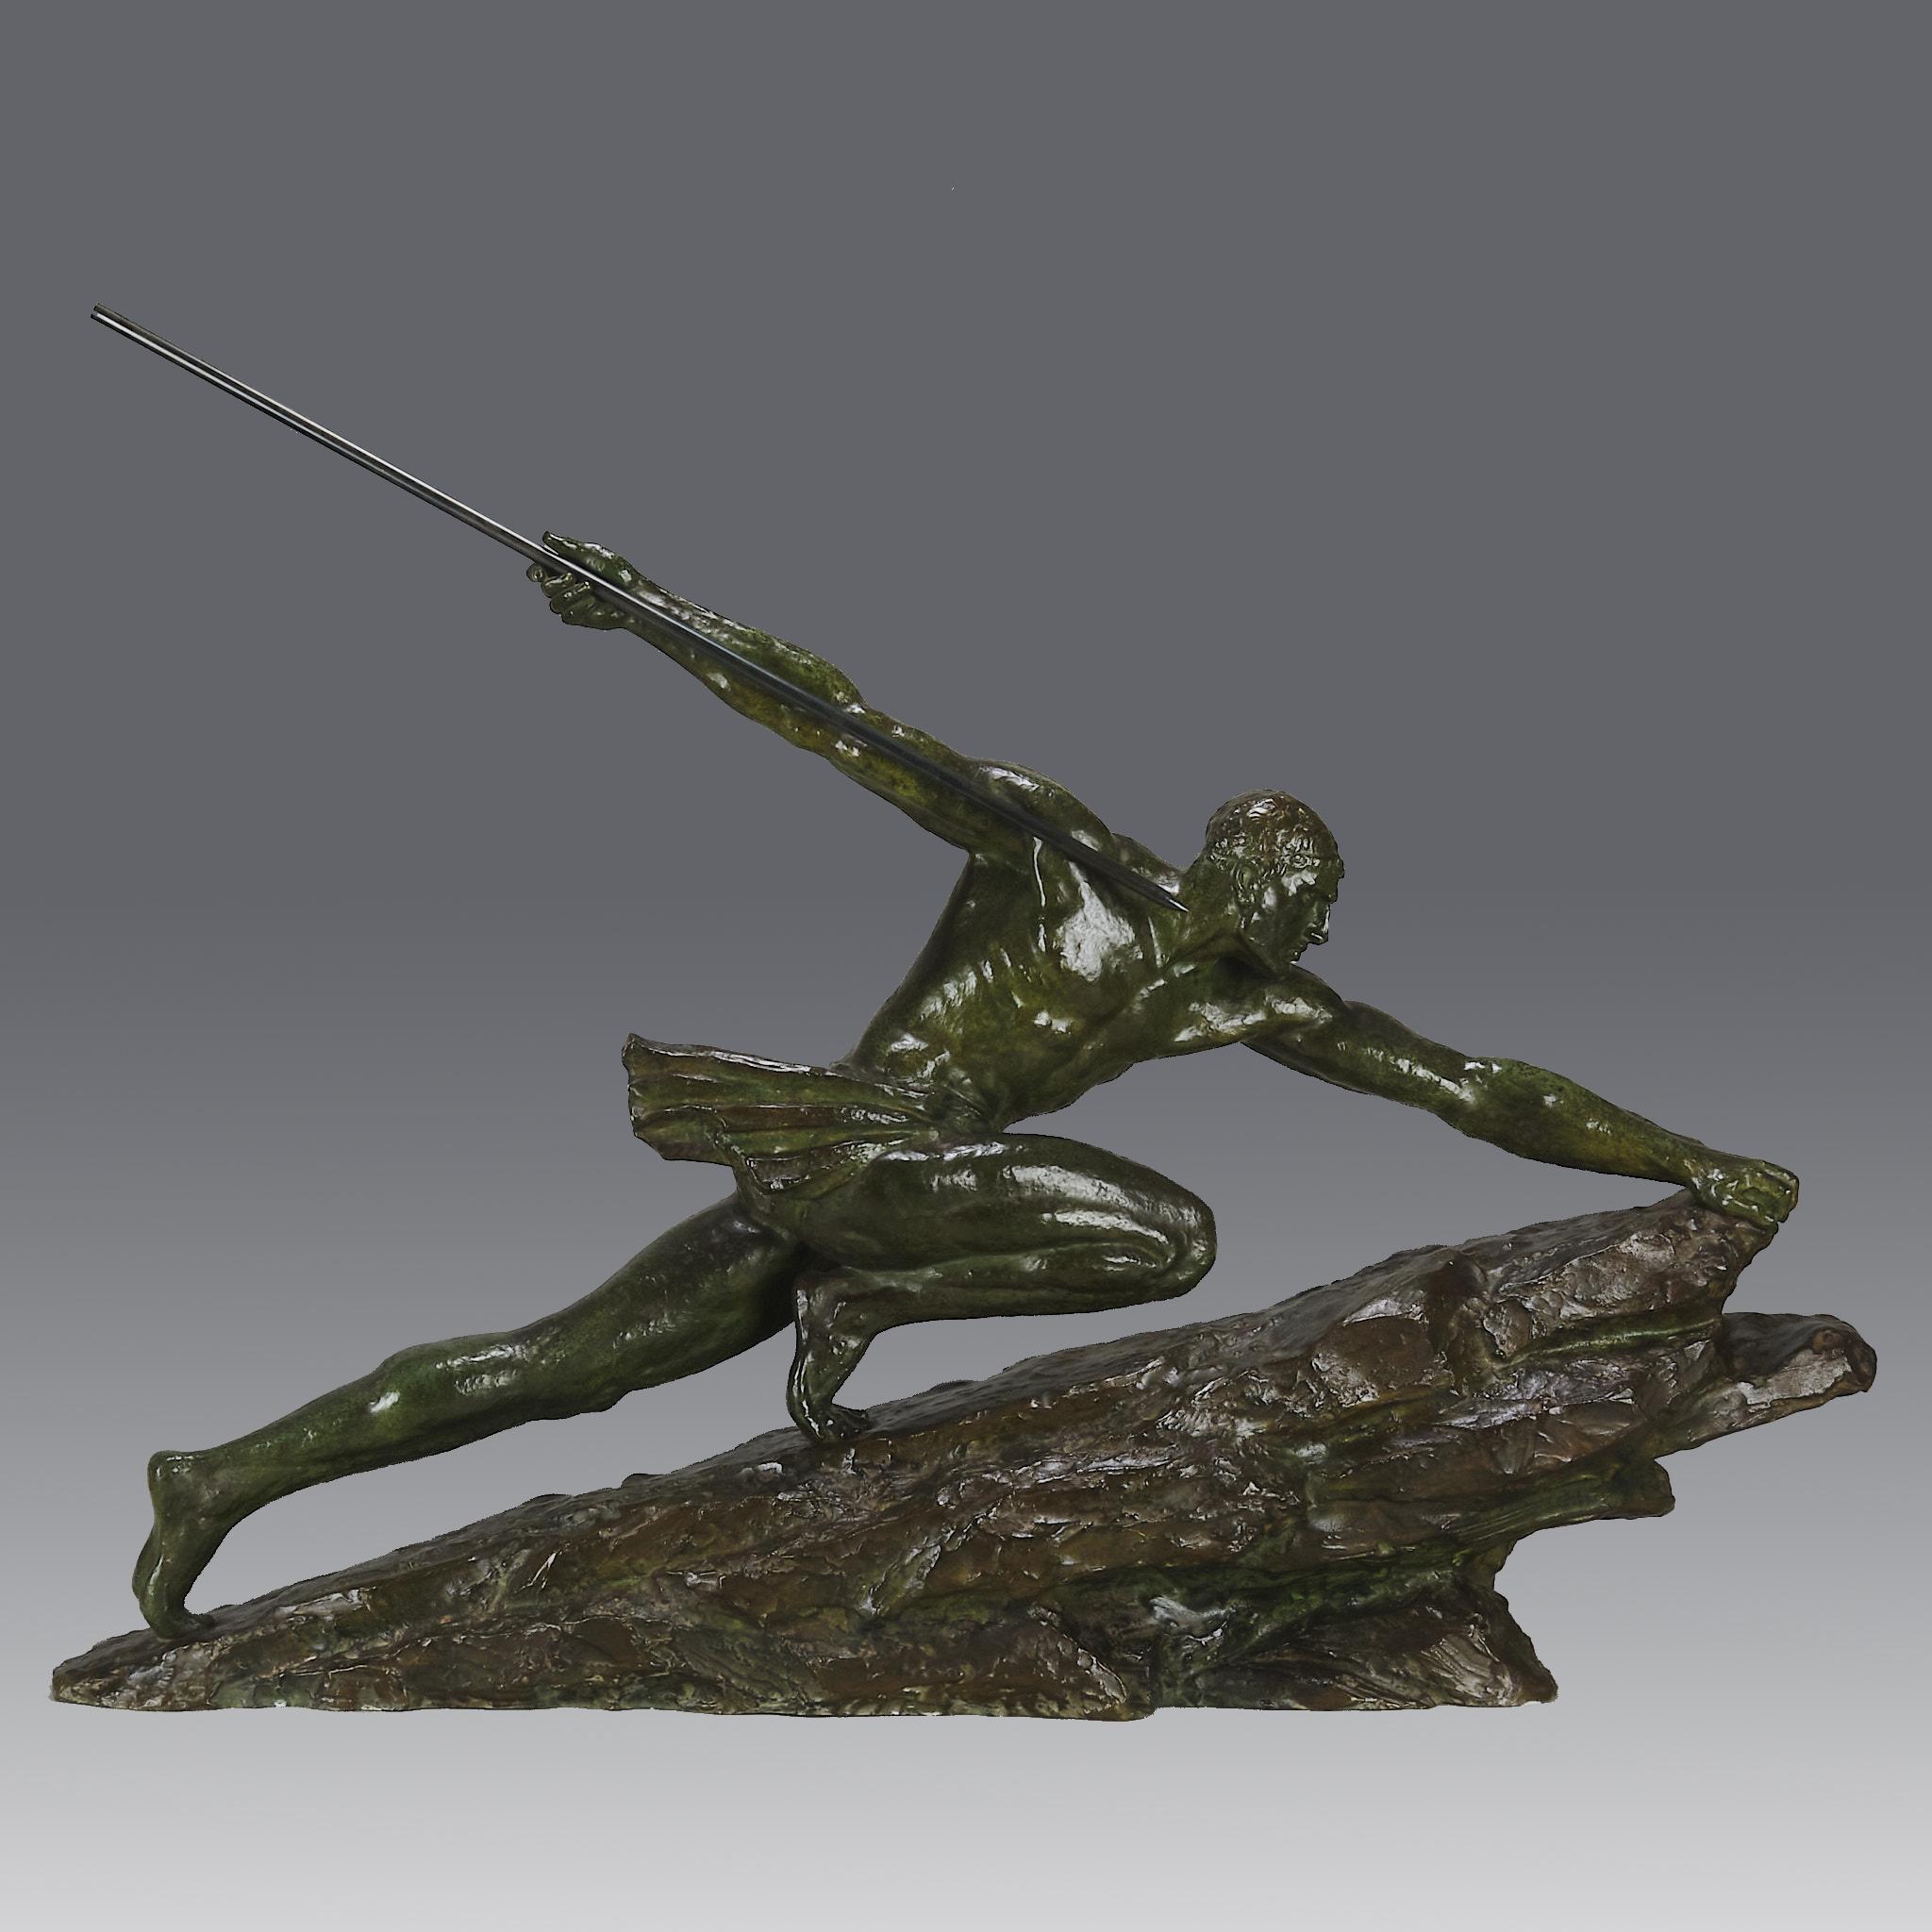 Eine ikonische, große Art-Déco-Bronzeskulptur eines starken, athletischen Mannes in kraftvoller Pose, der einen langen Speer in der Hand hält, während er einen großen Felsblock erklimmt. Die Bronze ist von herrlich satter grüner Farbe und